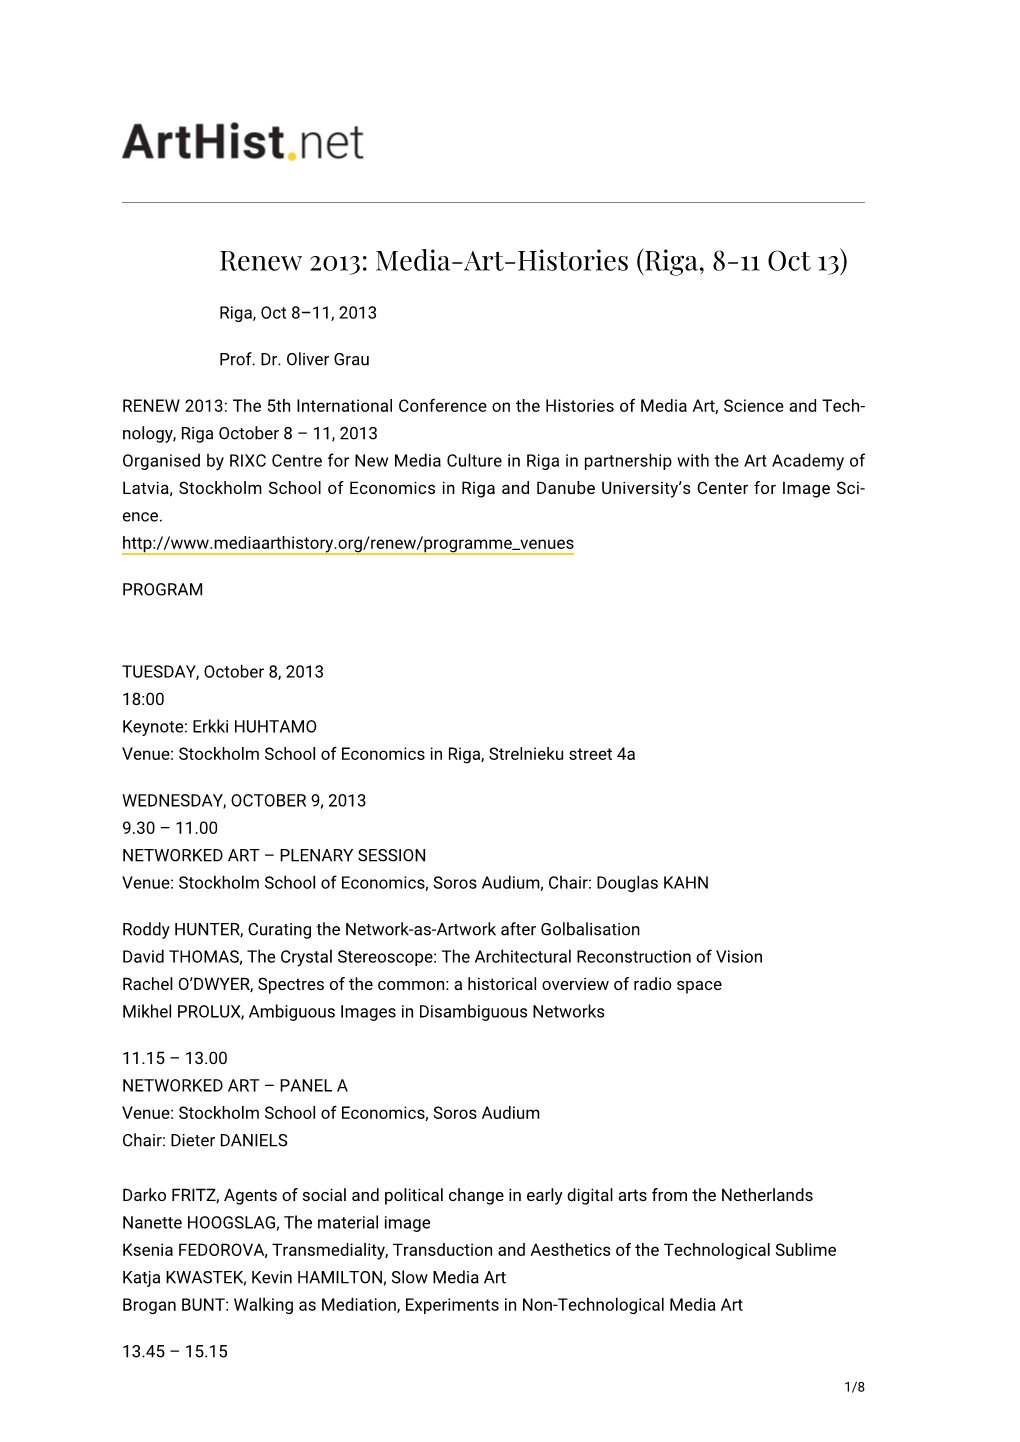 Media-Art-Histories (Riga, 8-11 Oct 13)